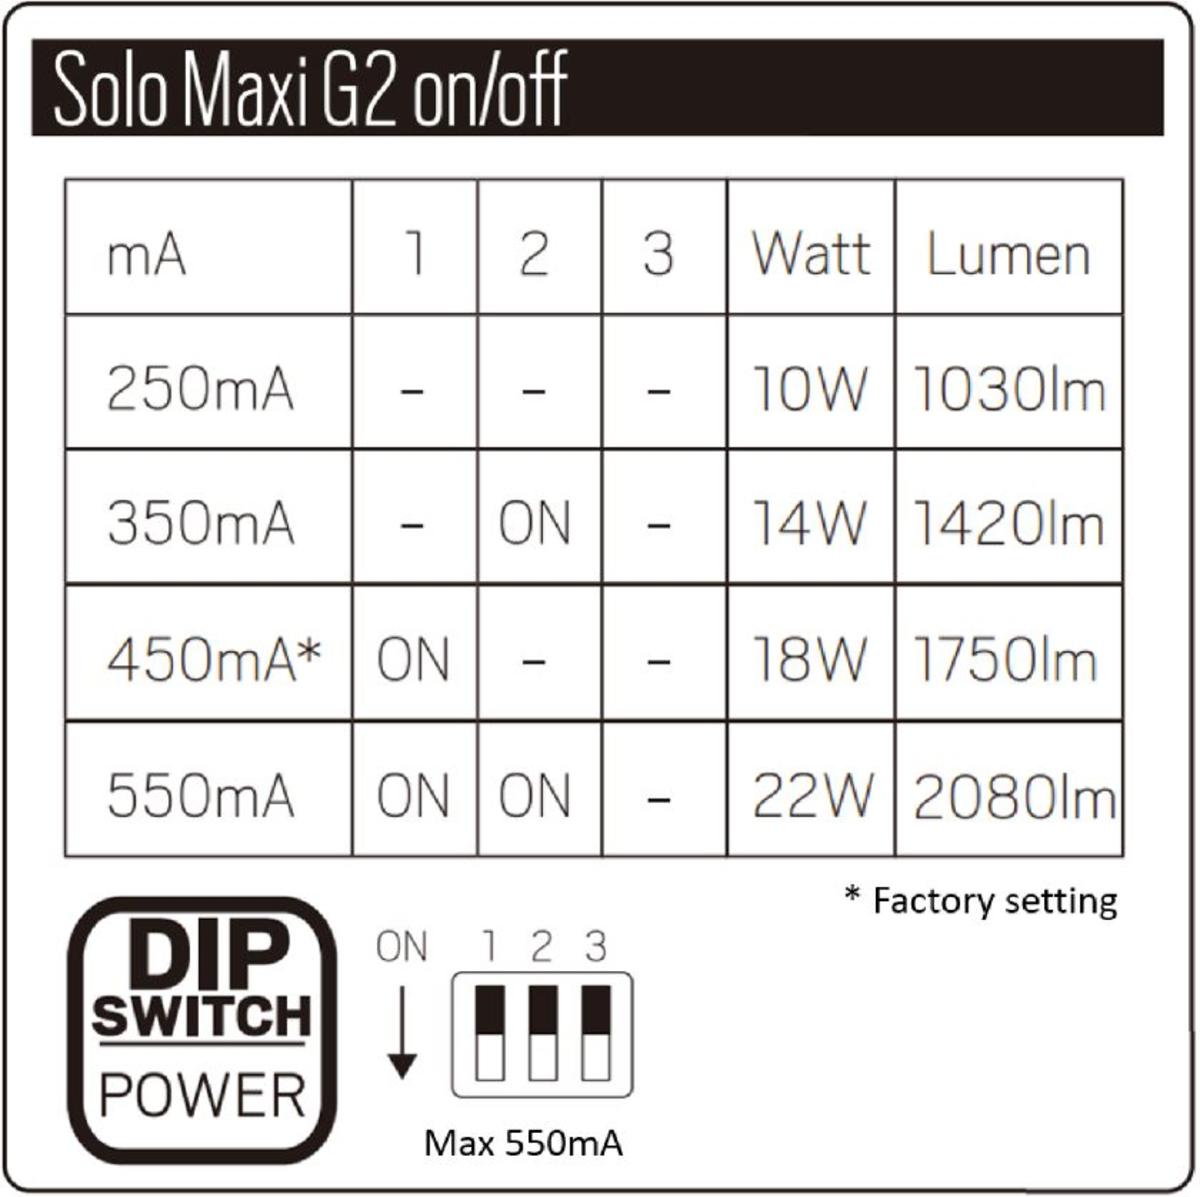 Solo Maxi G2_DIPpower.JPG